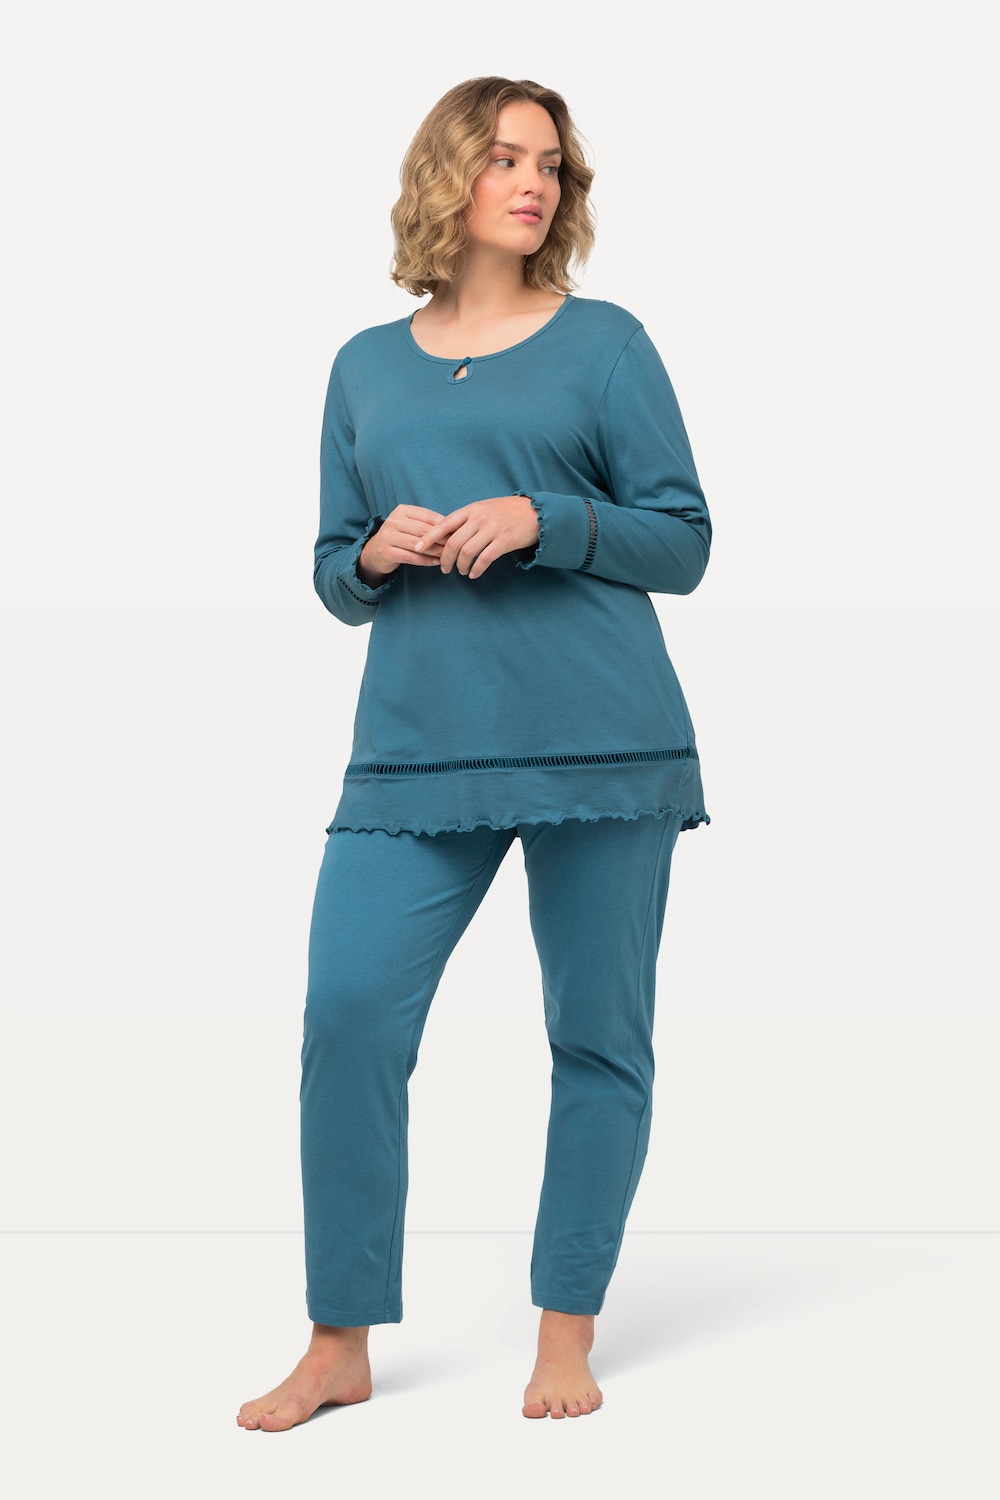 Grote Maten pyjama, Dames, turquoise, Maat: 58/60, Katoen, Ulla Popken